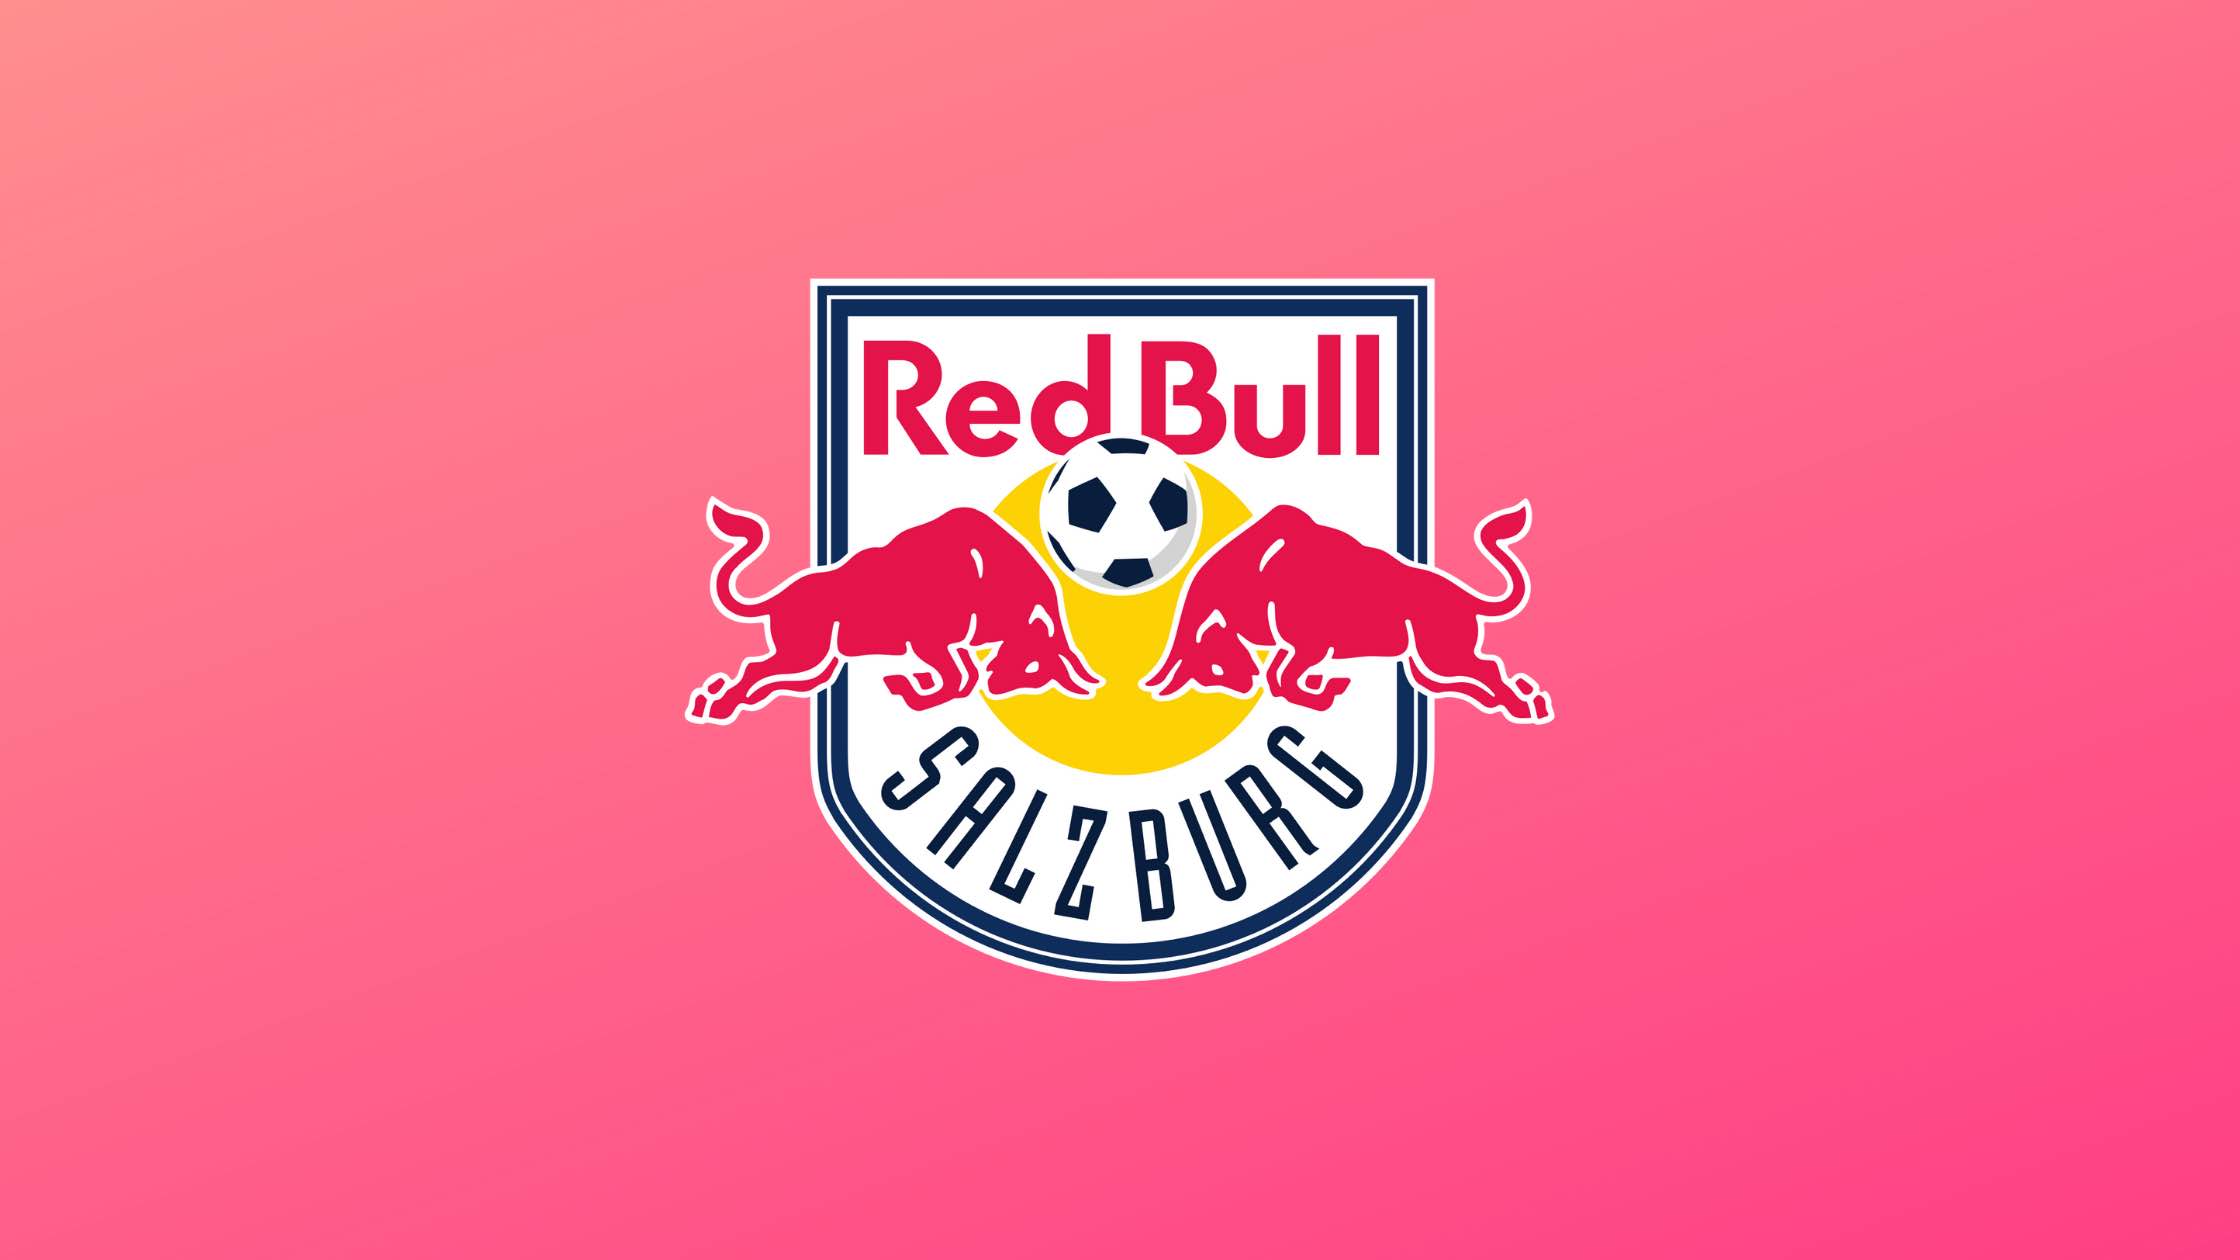 RedBull Salzburg ist ein österreichischer Verein, der in der Champions League spielt.